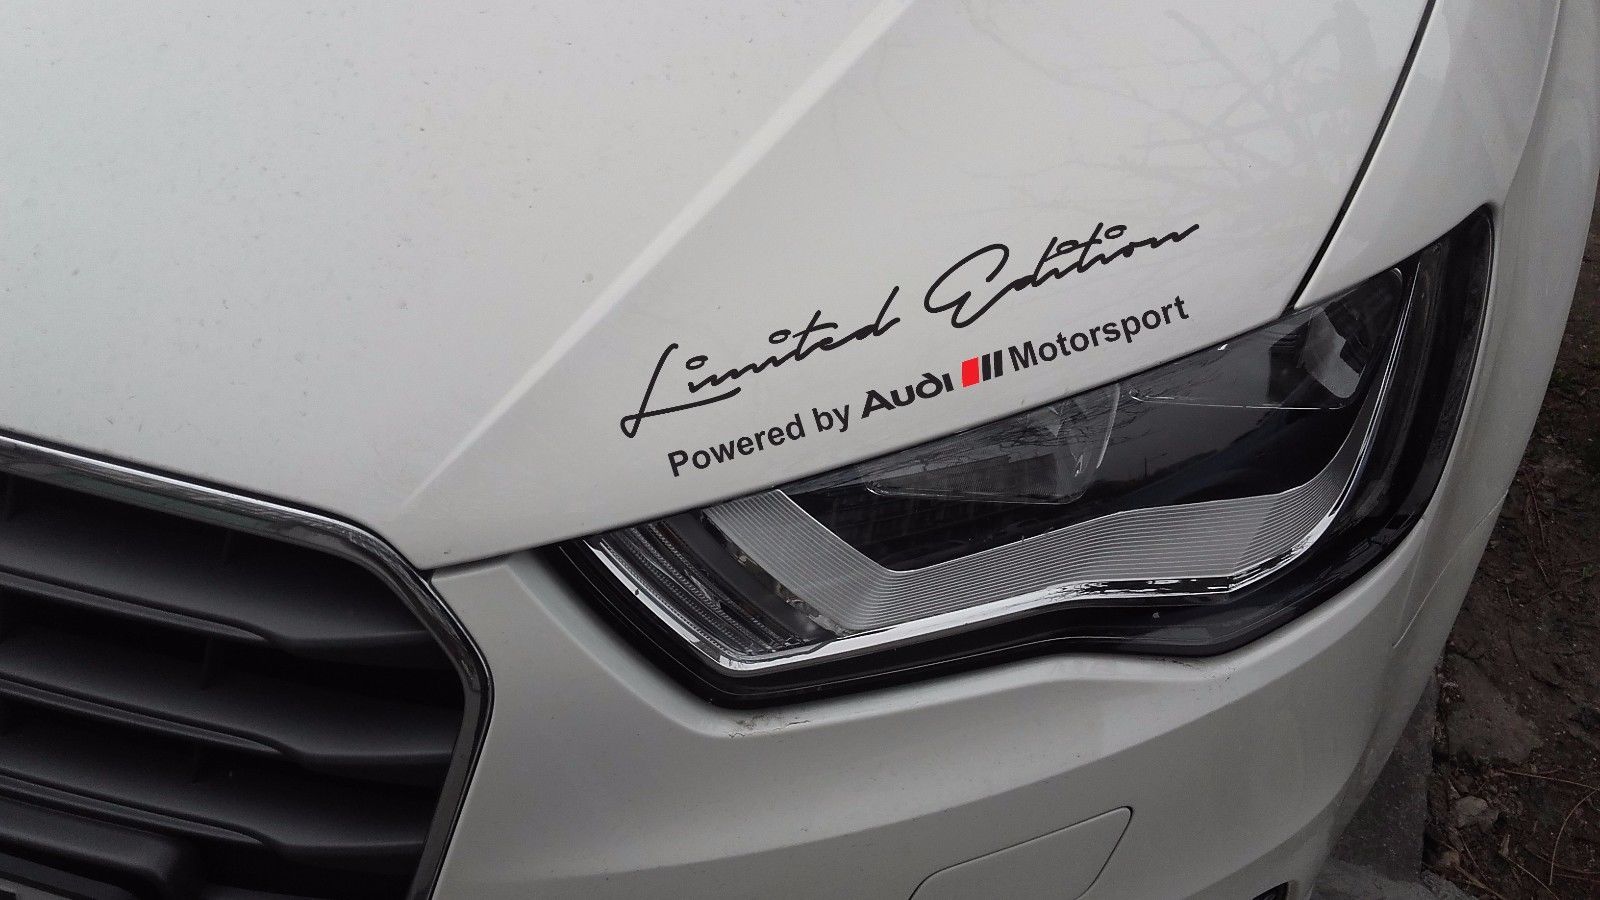 2 x Audi Motorsport Aufkleber in limitierter Auflage, kompatibel mit Audi Modellen